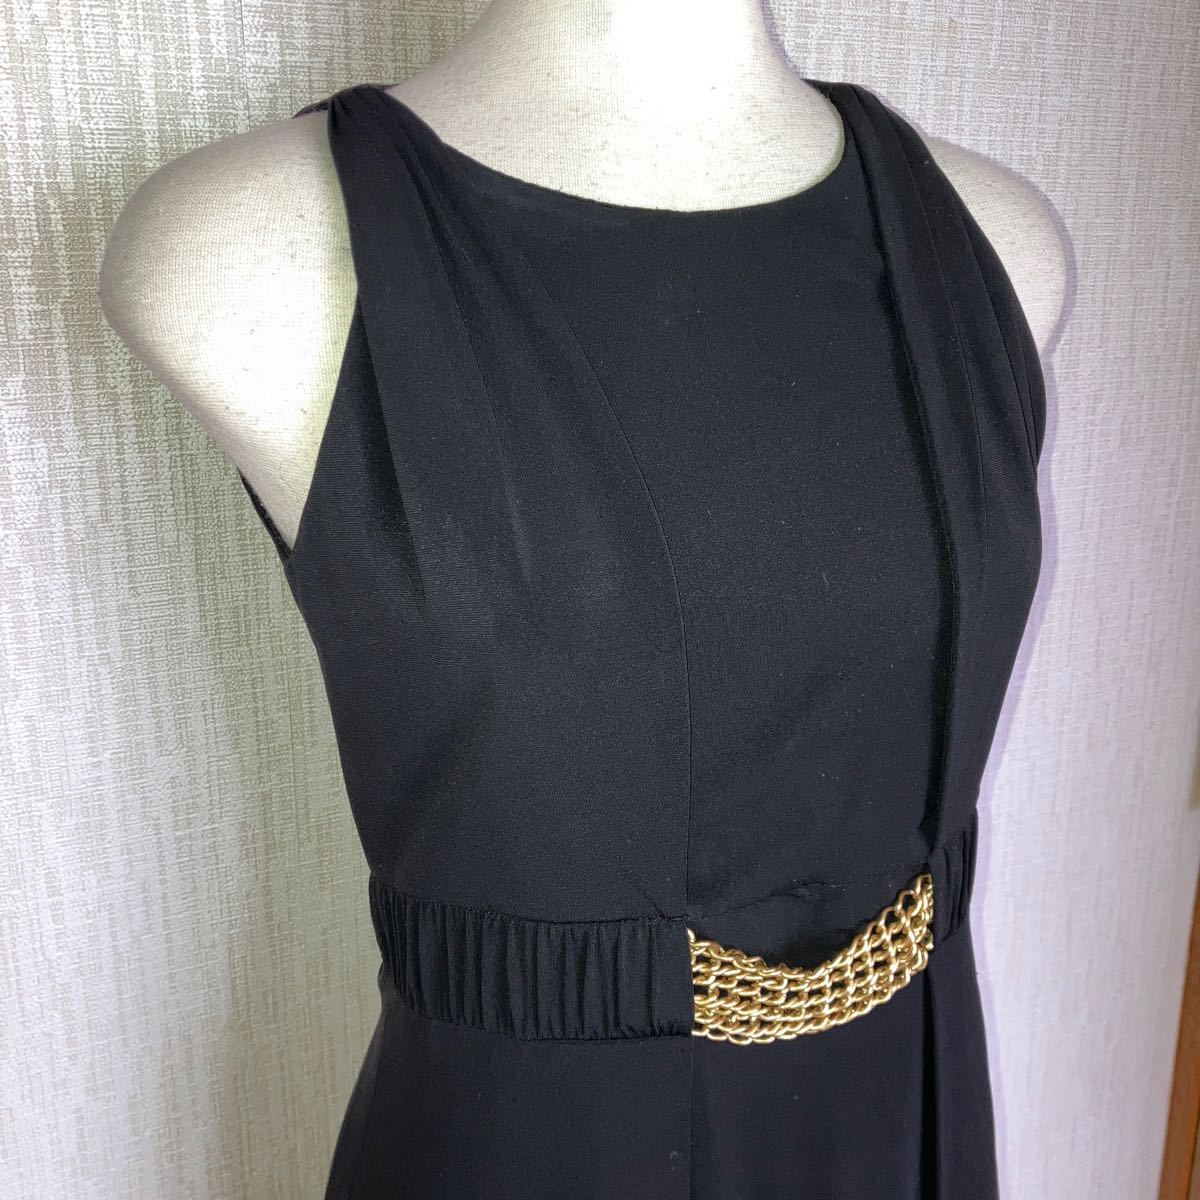  paul (pole) kaPAULE KA# вечернее платье джерси - One-piece чёрный черный #38# золотая цепь ремень дизайн # Франция высококлассный бренд #